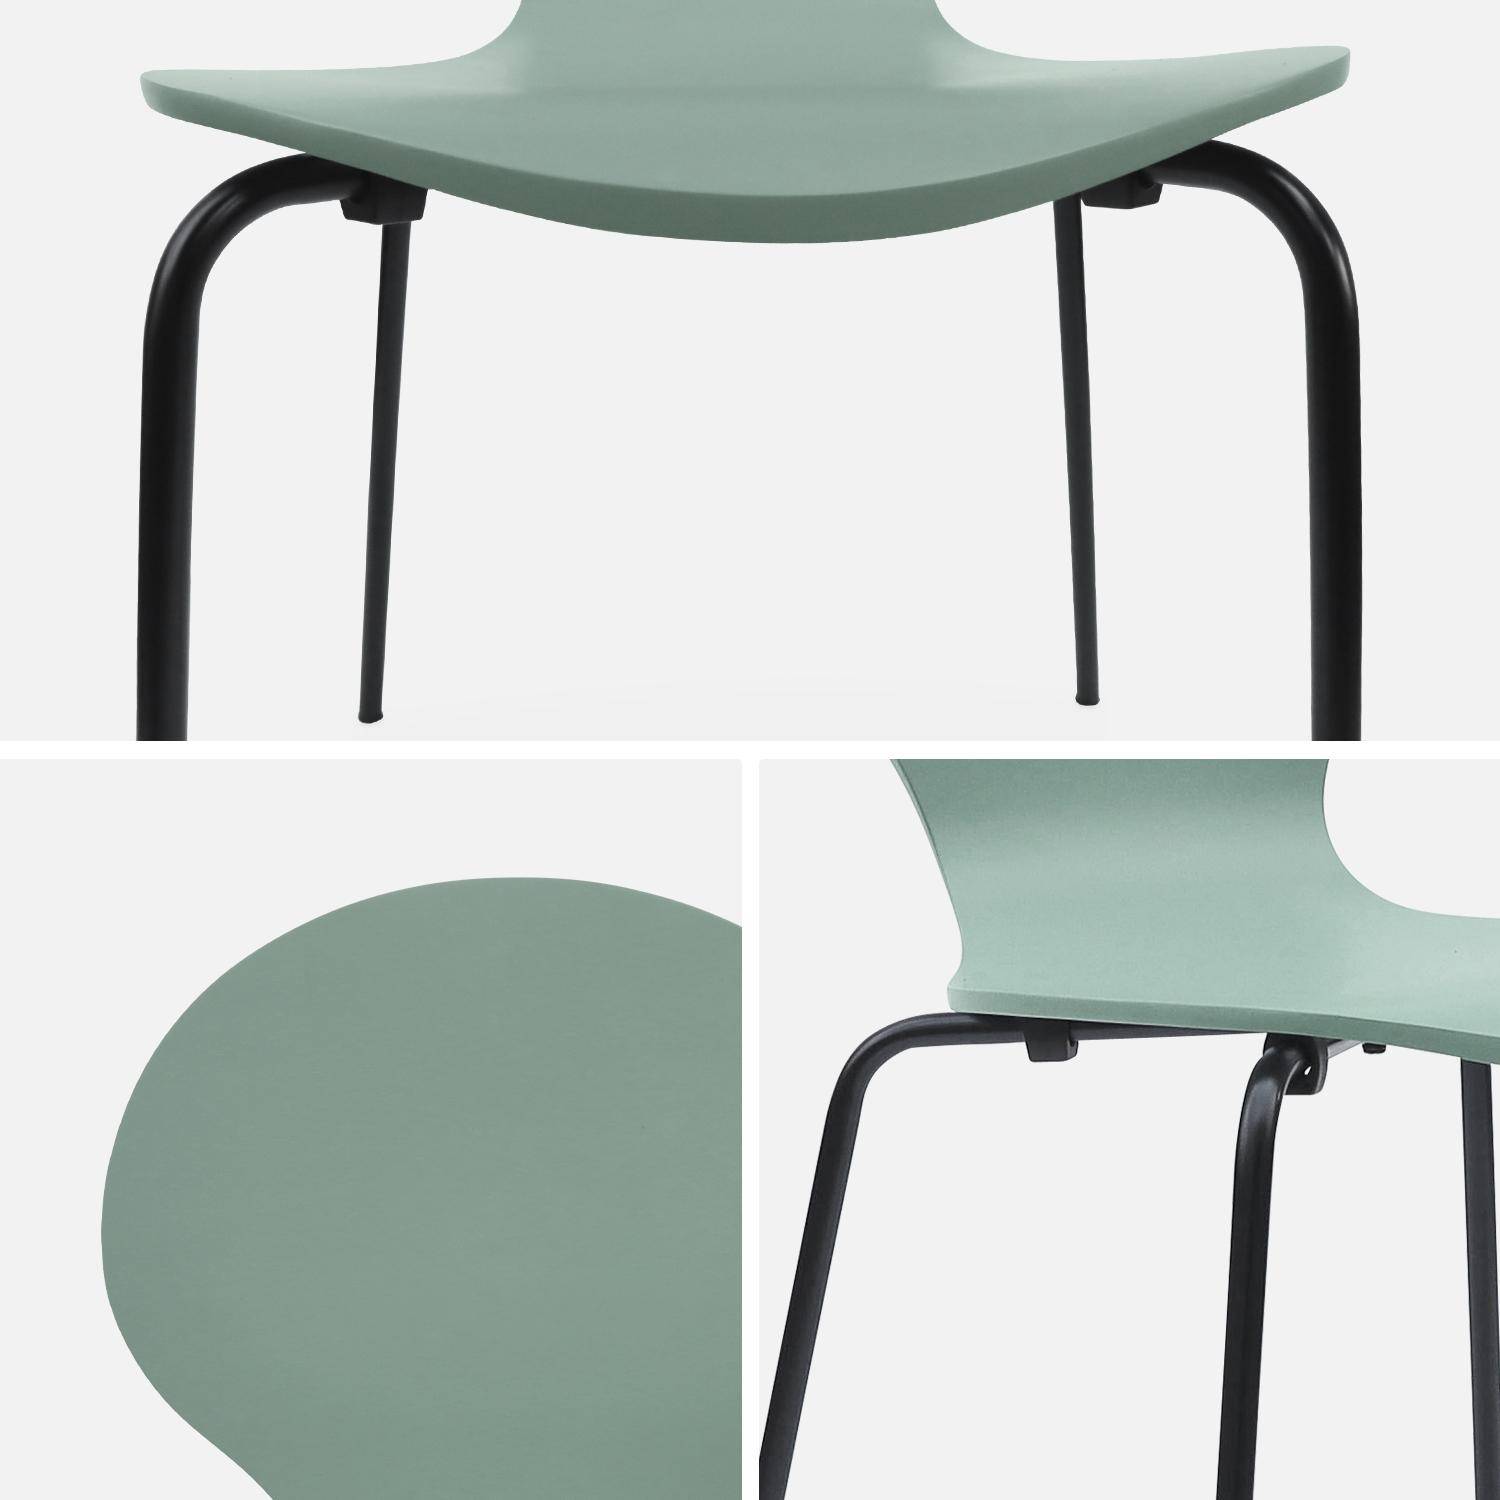 Conjunto de 4 cadeiras empilháveis retro verde celadon, madeira de seringueira e contraplacado, pernas de aço, Naomi, L 43 x P 48 x A 87 cm Photo7